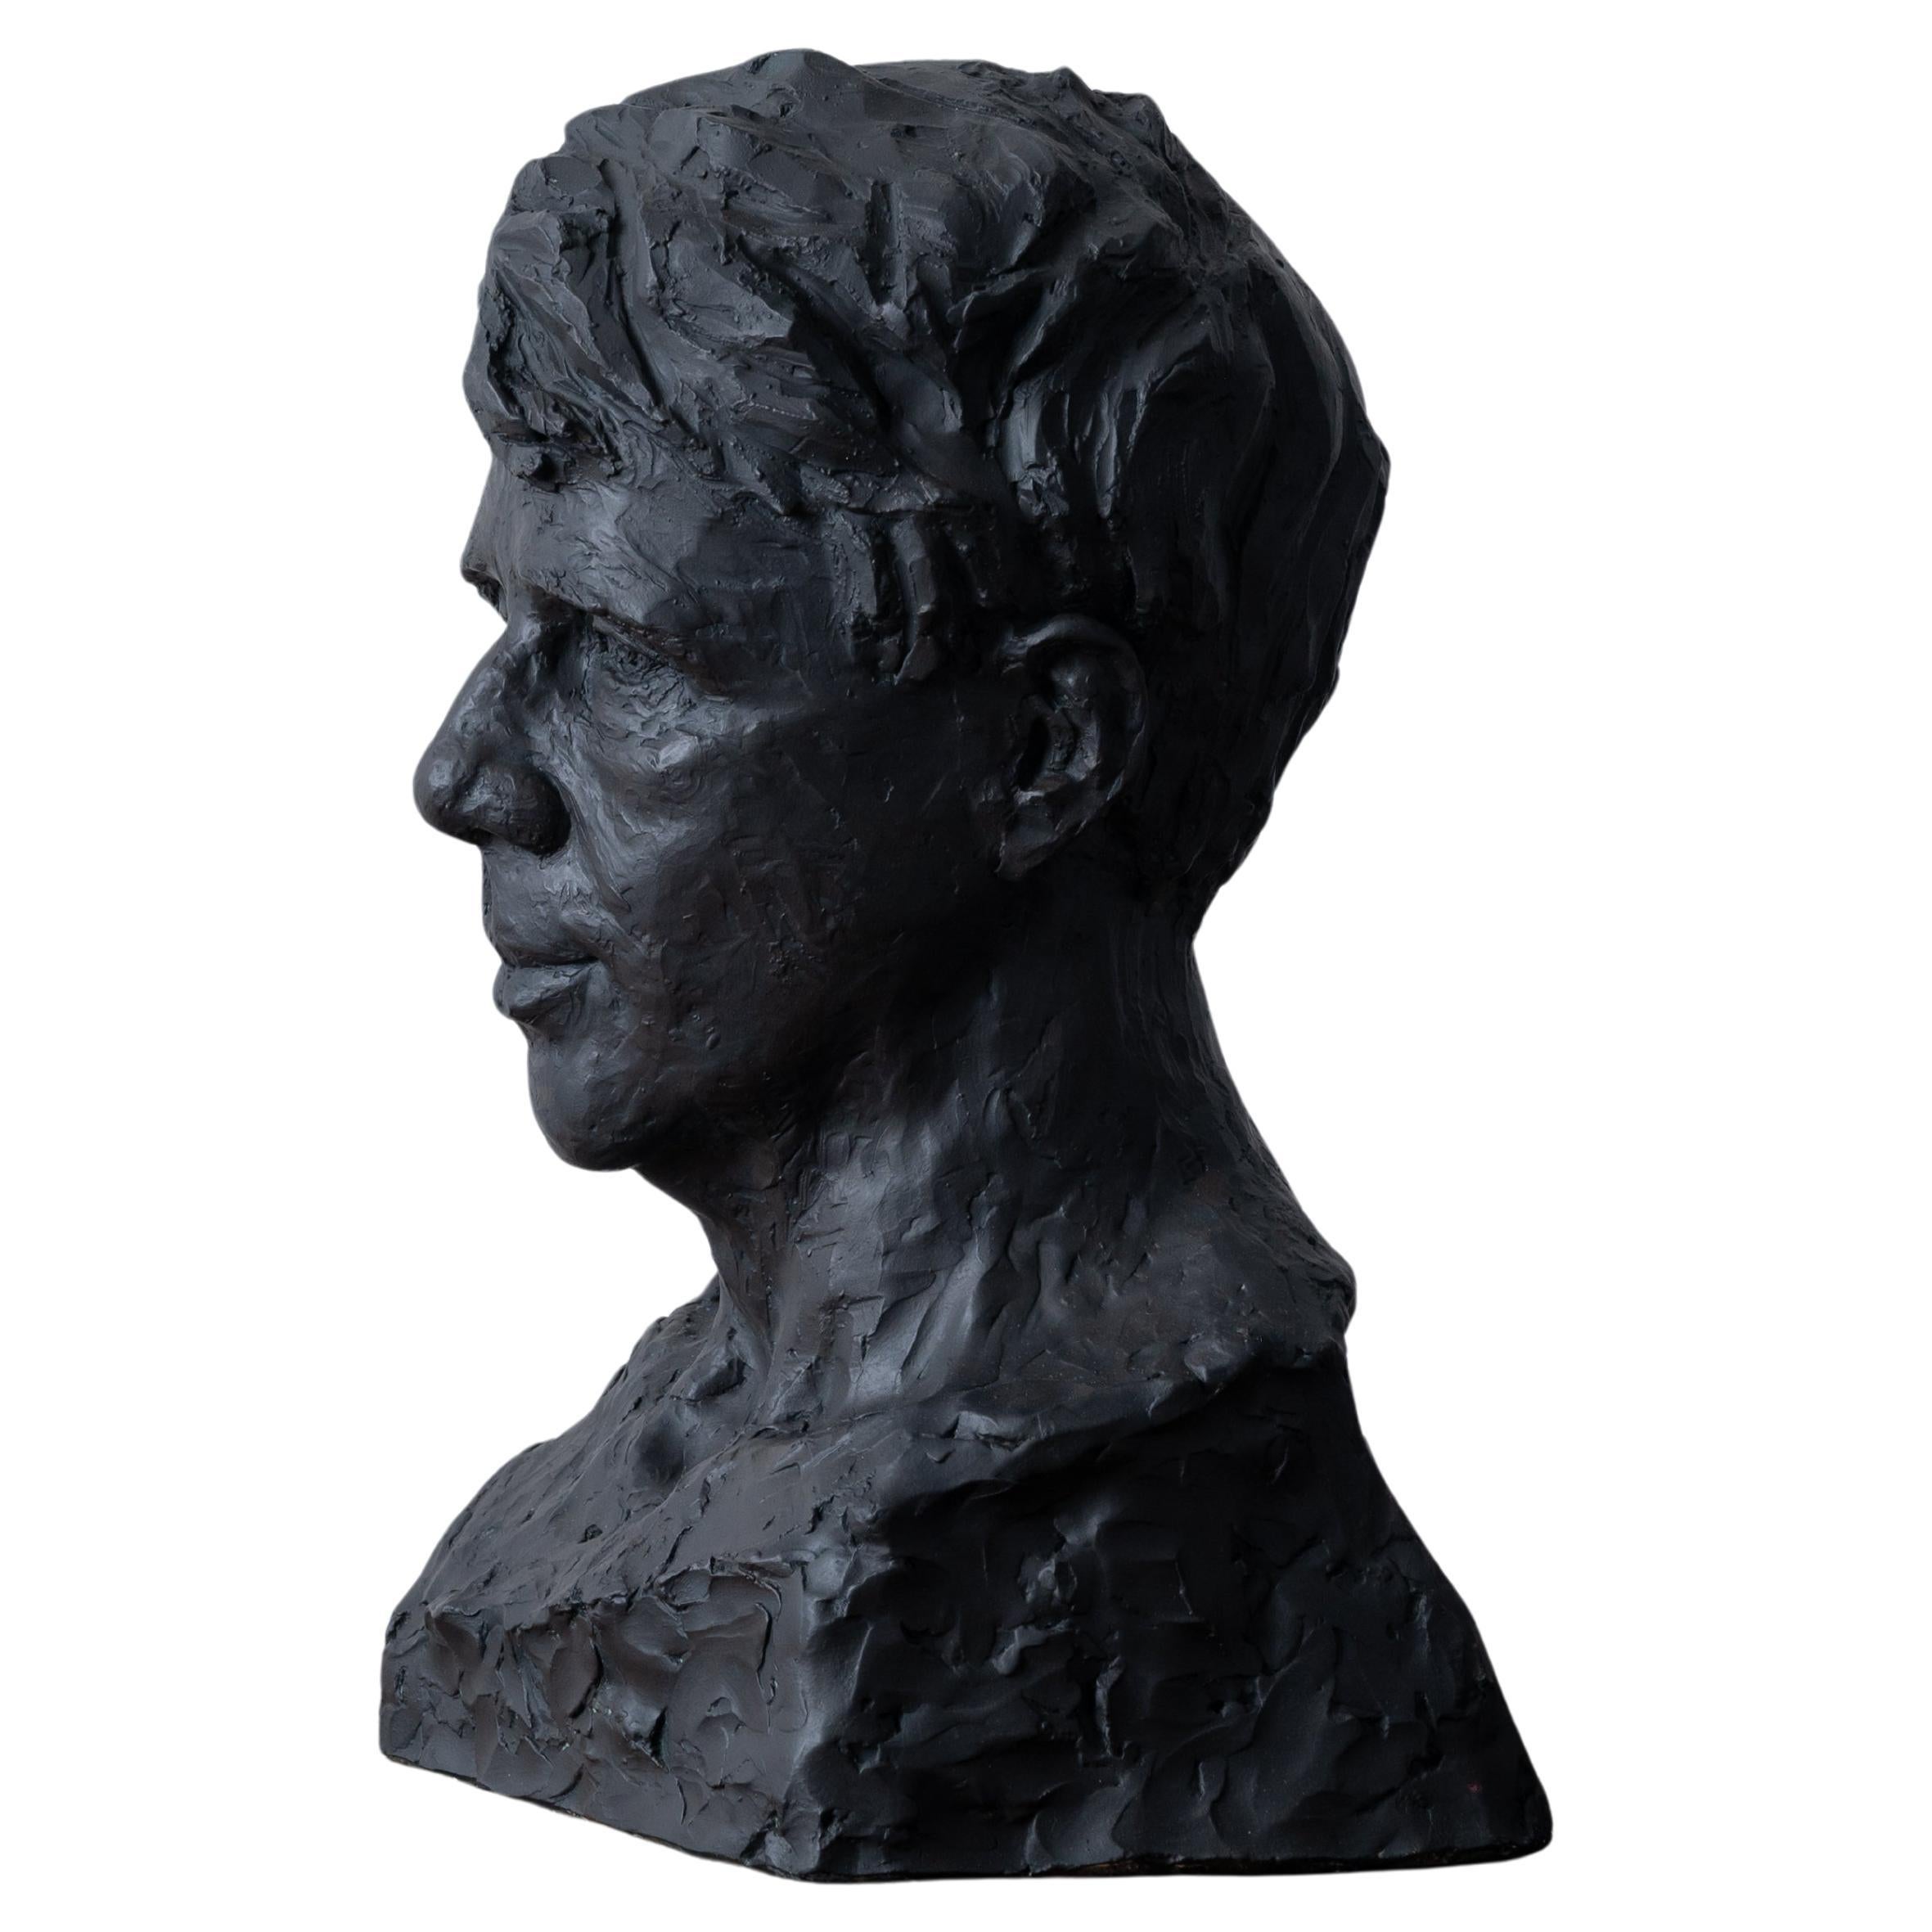 Buste Robert Frost par Florence Fiore, vers les années 1930